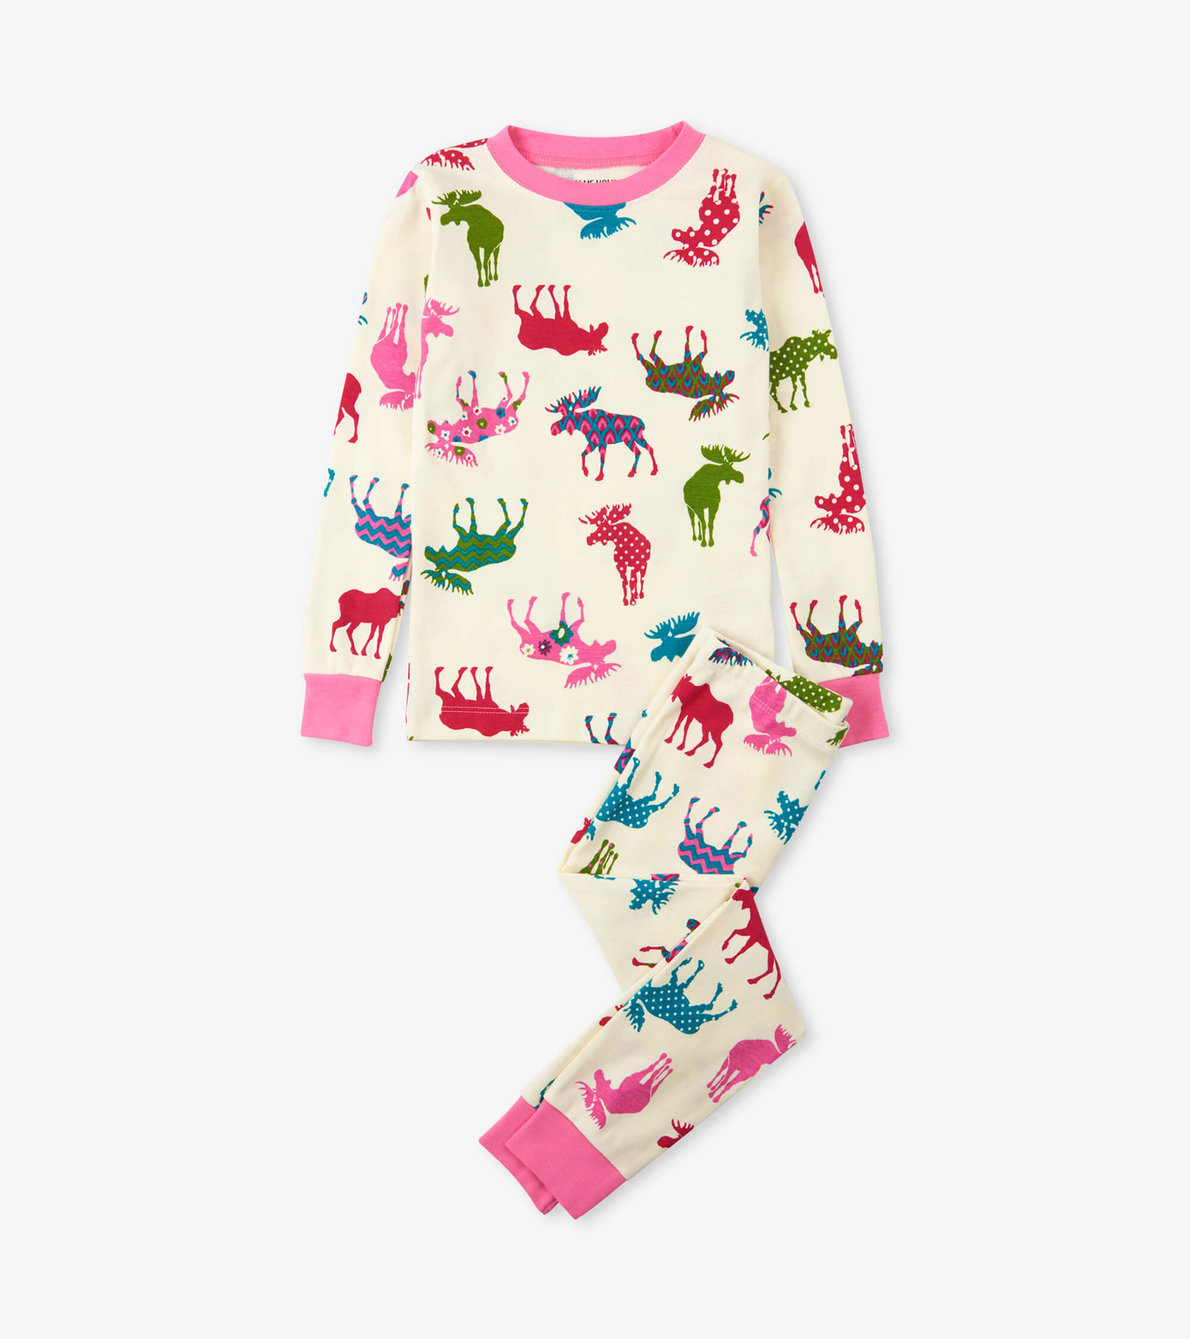 View larger image of Patterned Moose Kids Pajama Set